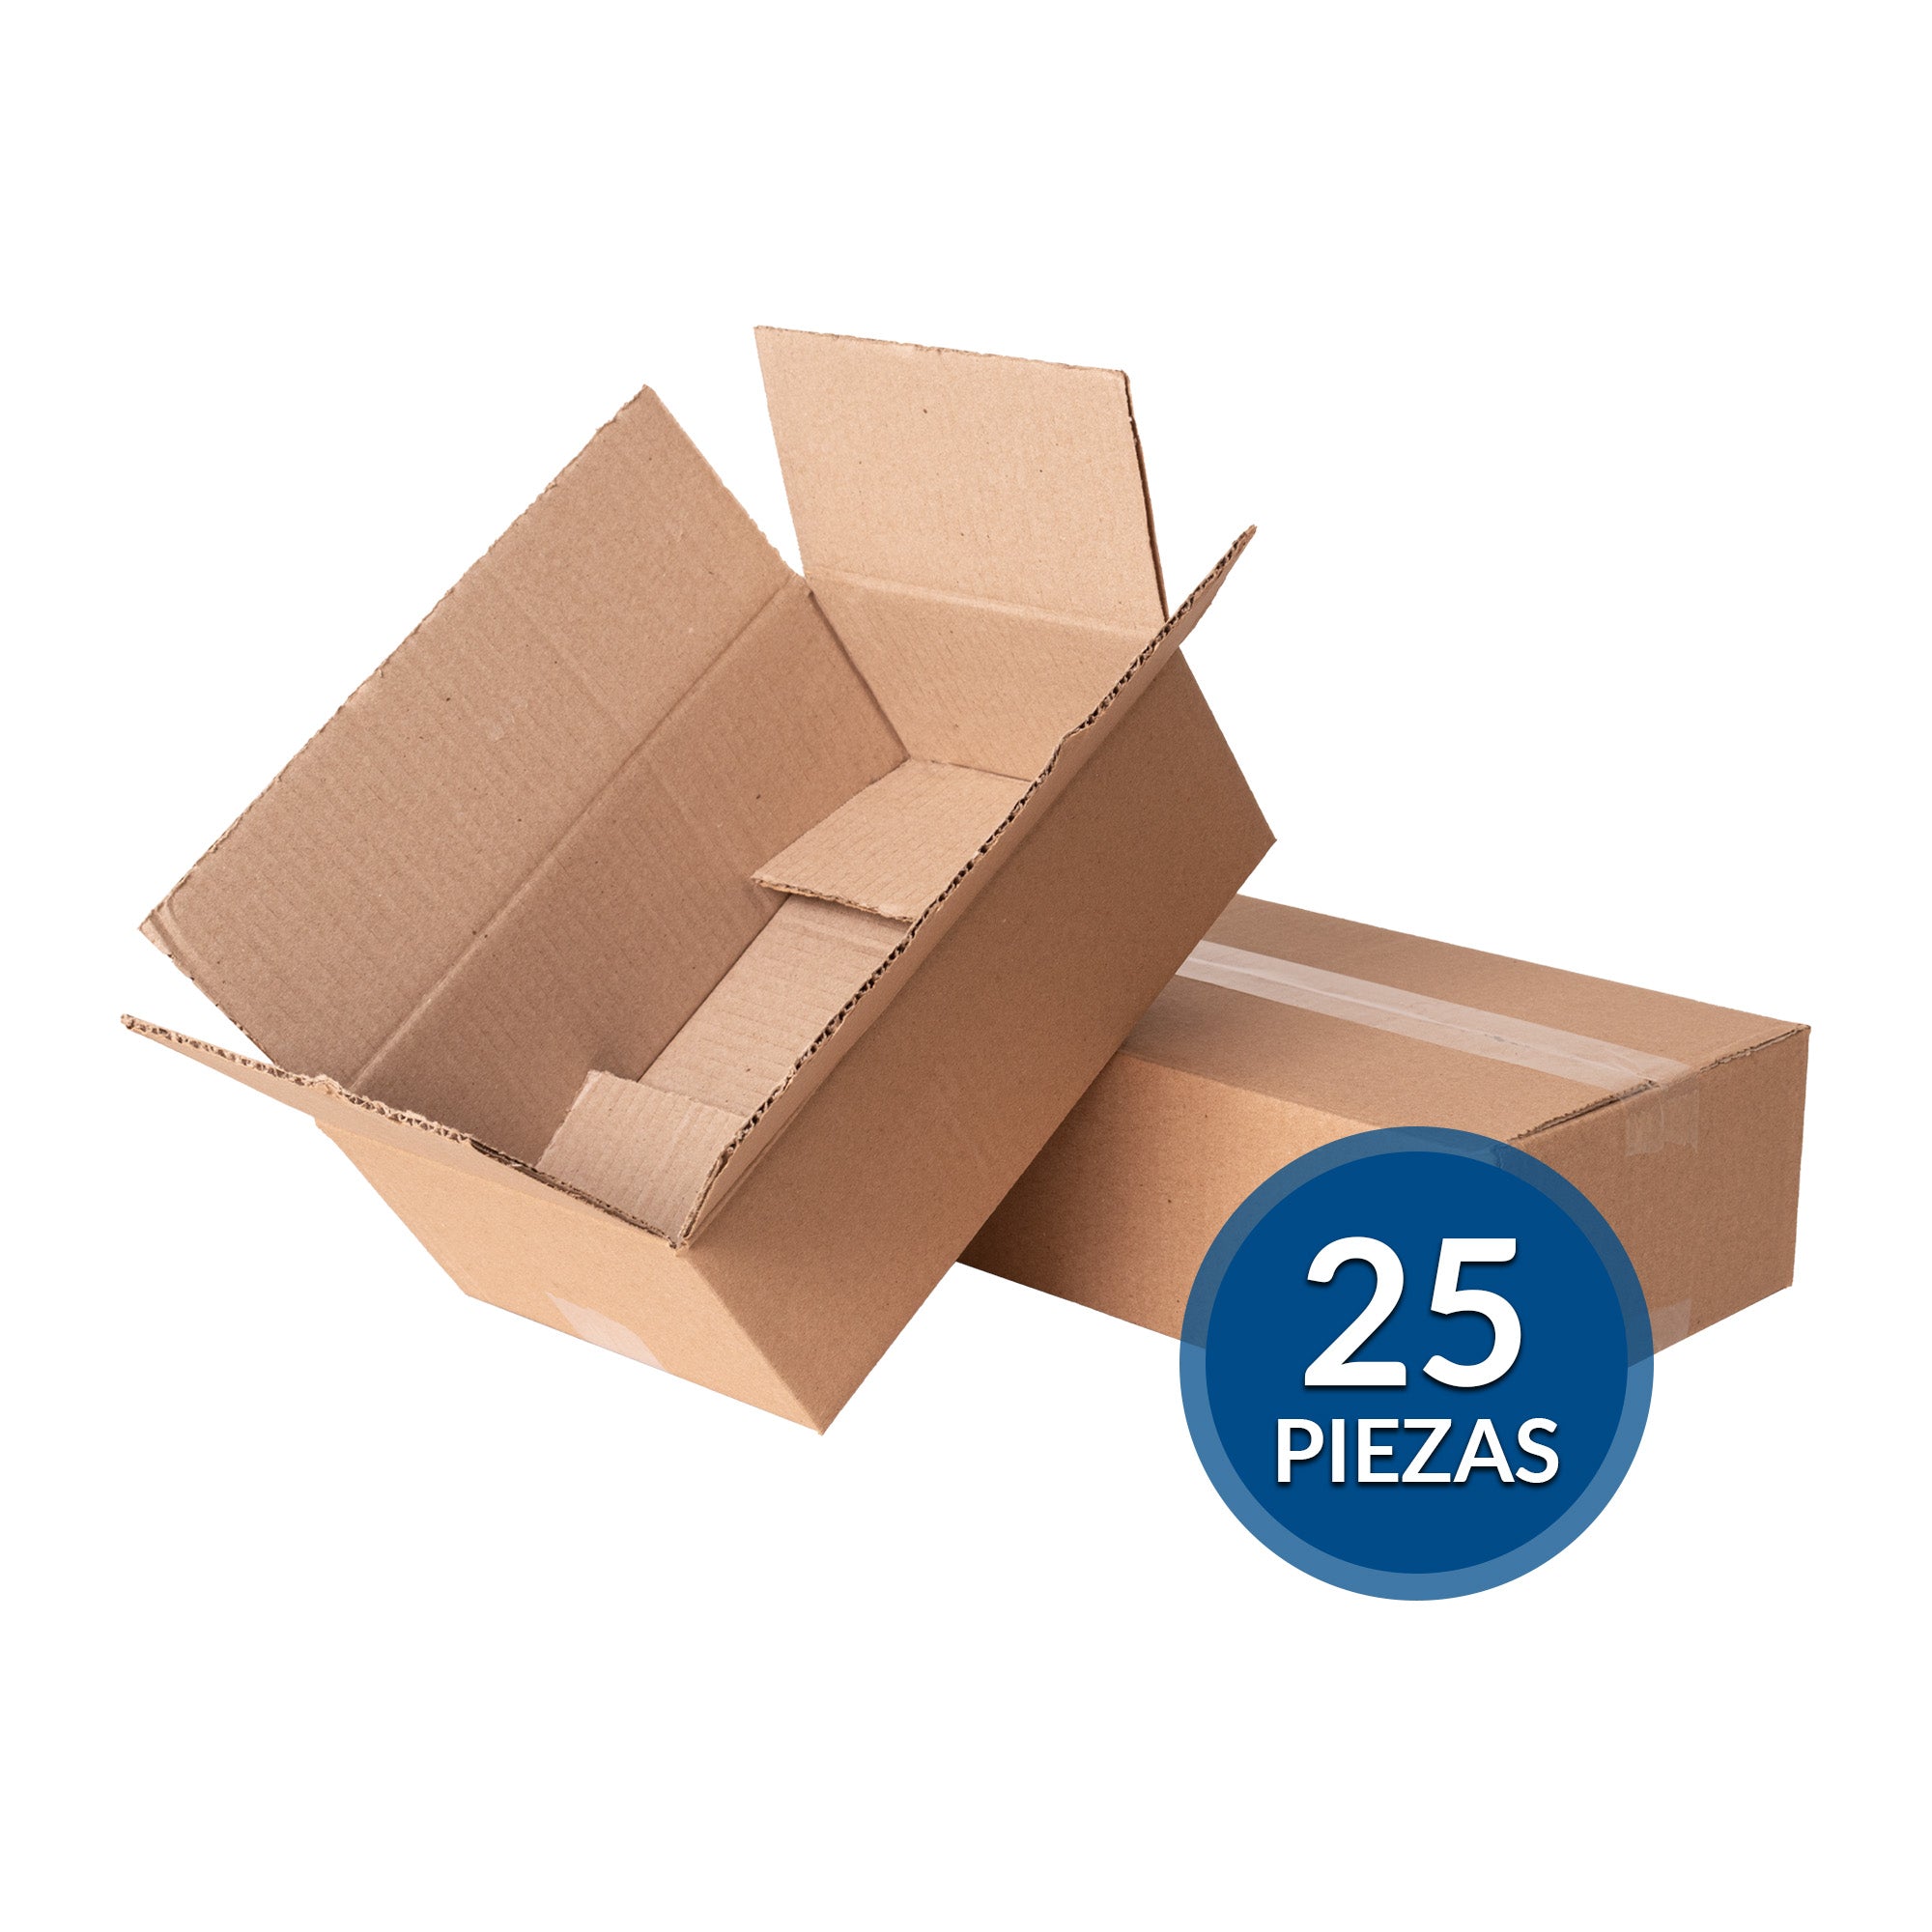 Cajas de cartón para envíos #19 – Packsys